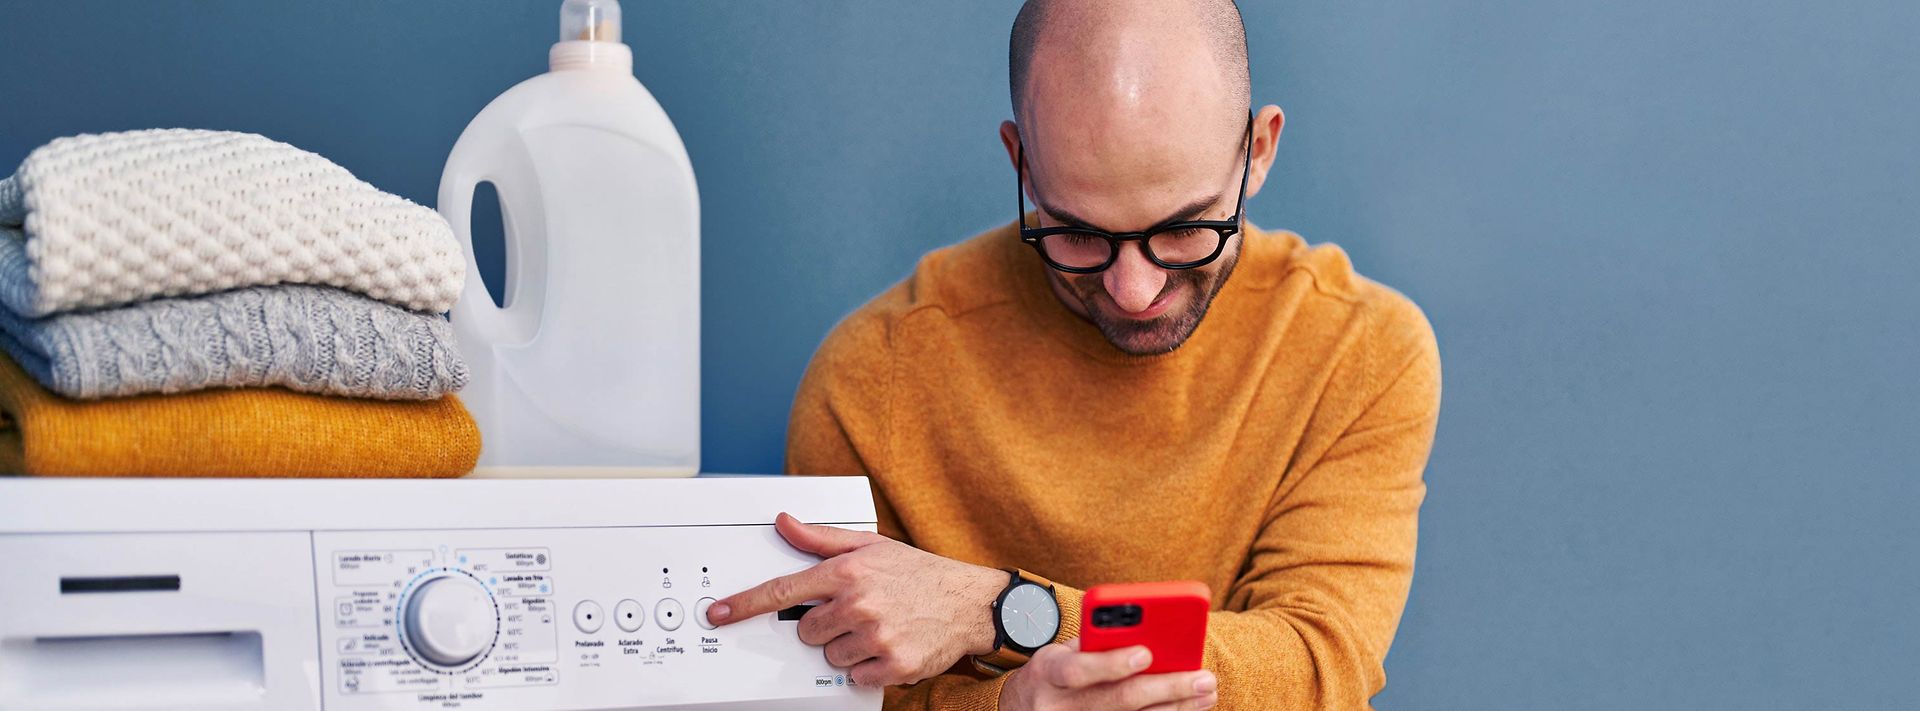 Mann mit Brille schaut auf sein Handy während er seine Waschmaschine bedient.